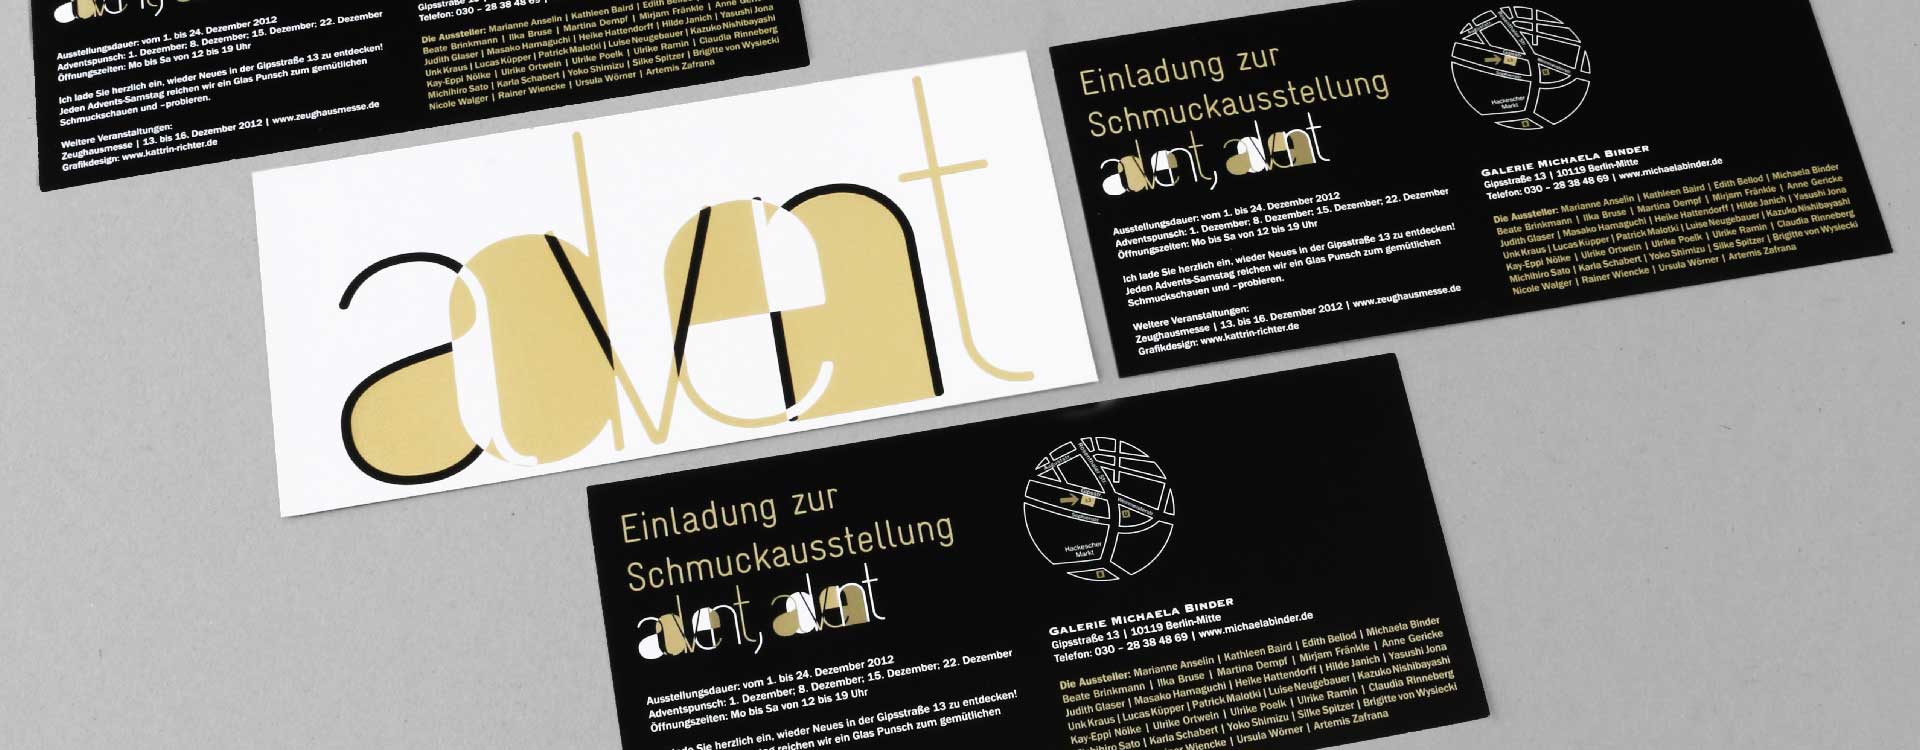 Einladungskarte mit Heißfolienprägung zur Schmuckausstellung 2012 in der Galerie Michaela Binder, Berlin; Design: Kattrin Richter | Büro für Grafikdesign 